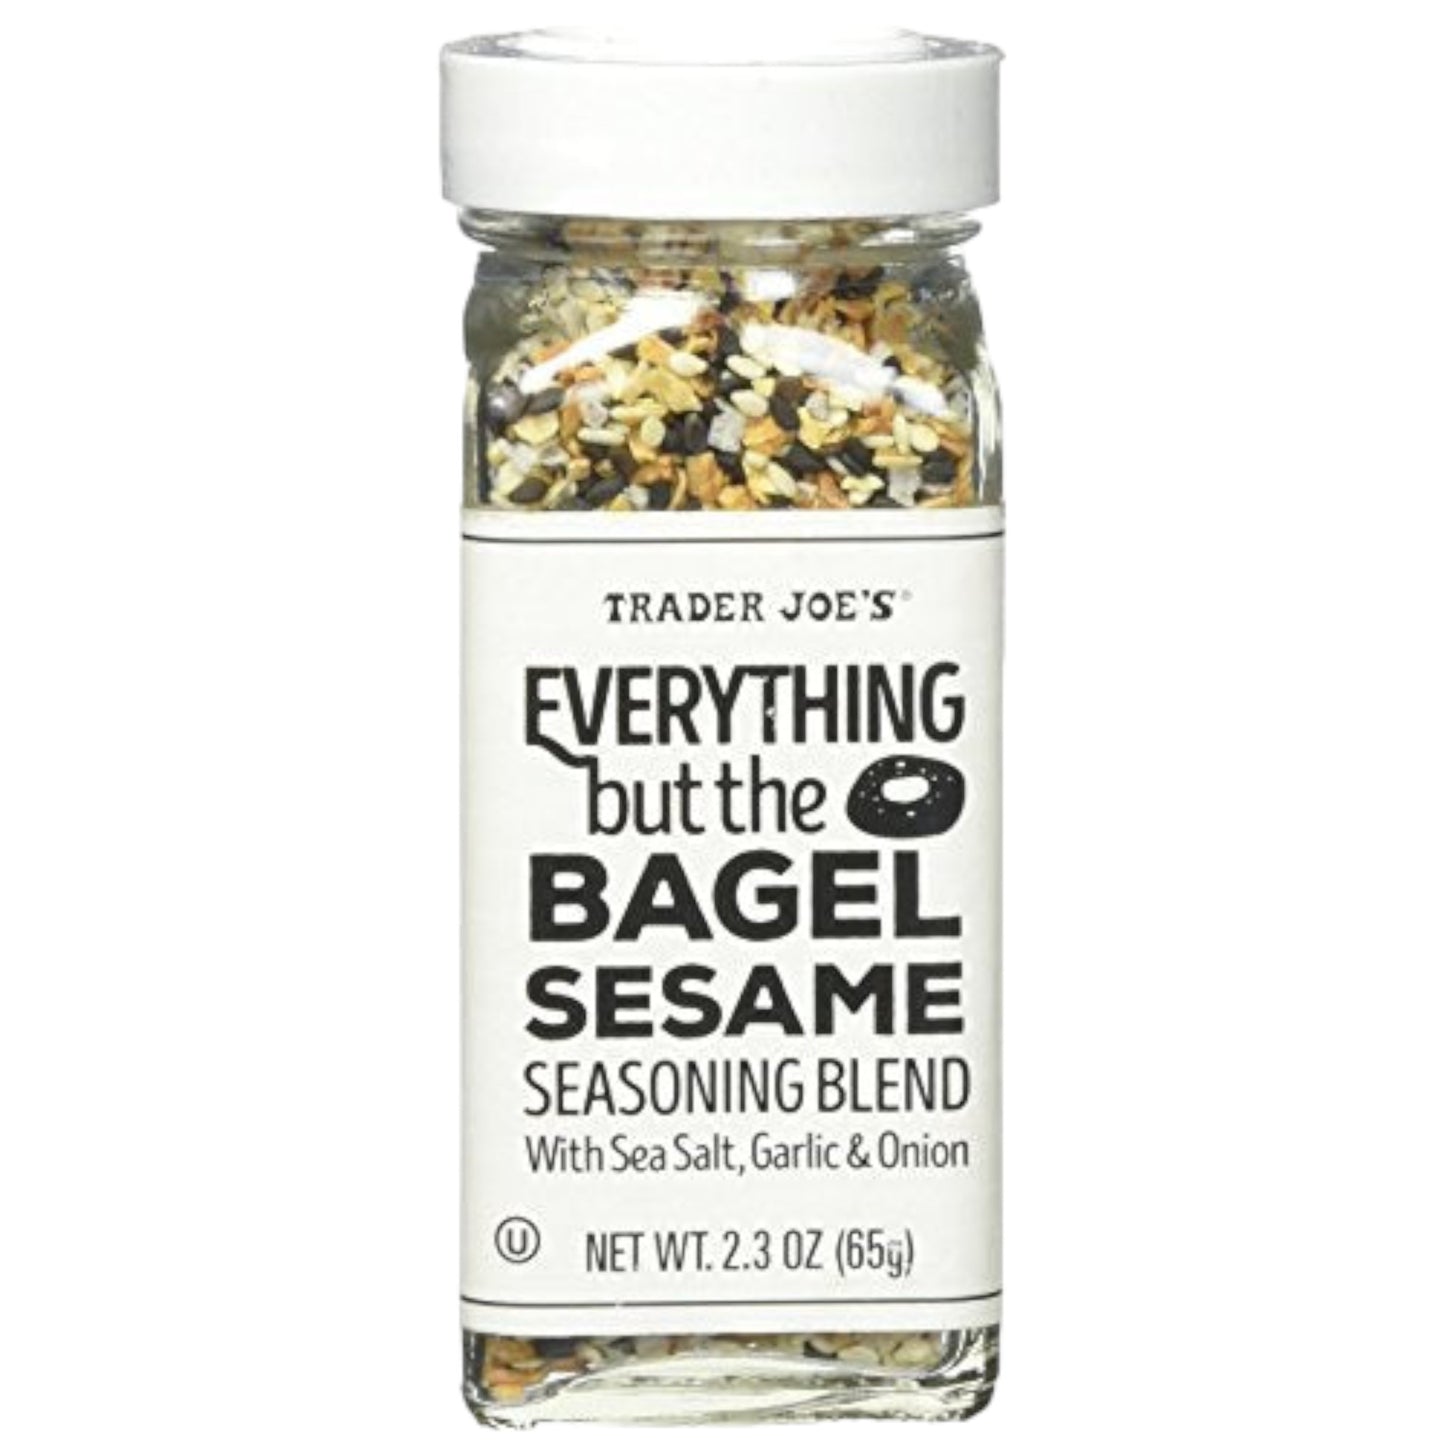 Trader Joe's Everything but the Bagel Sesame Seasoning Blend 2.3 oz